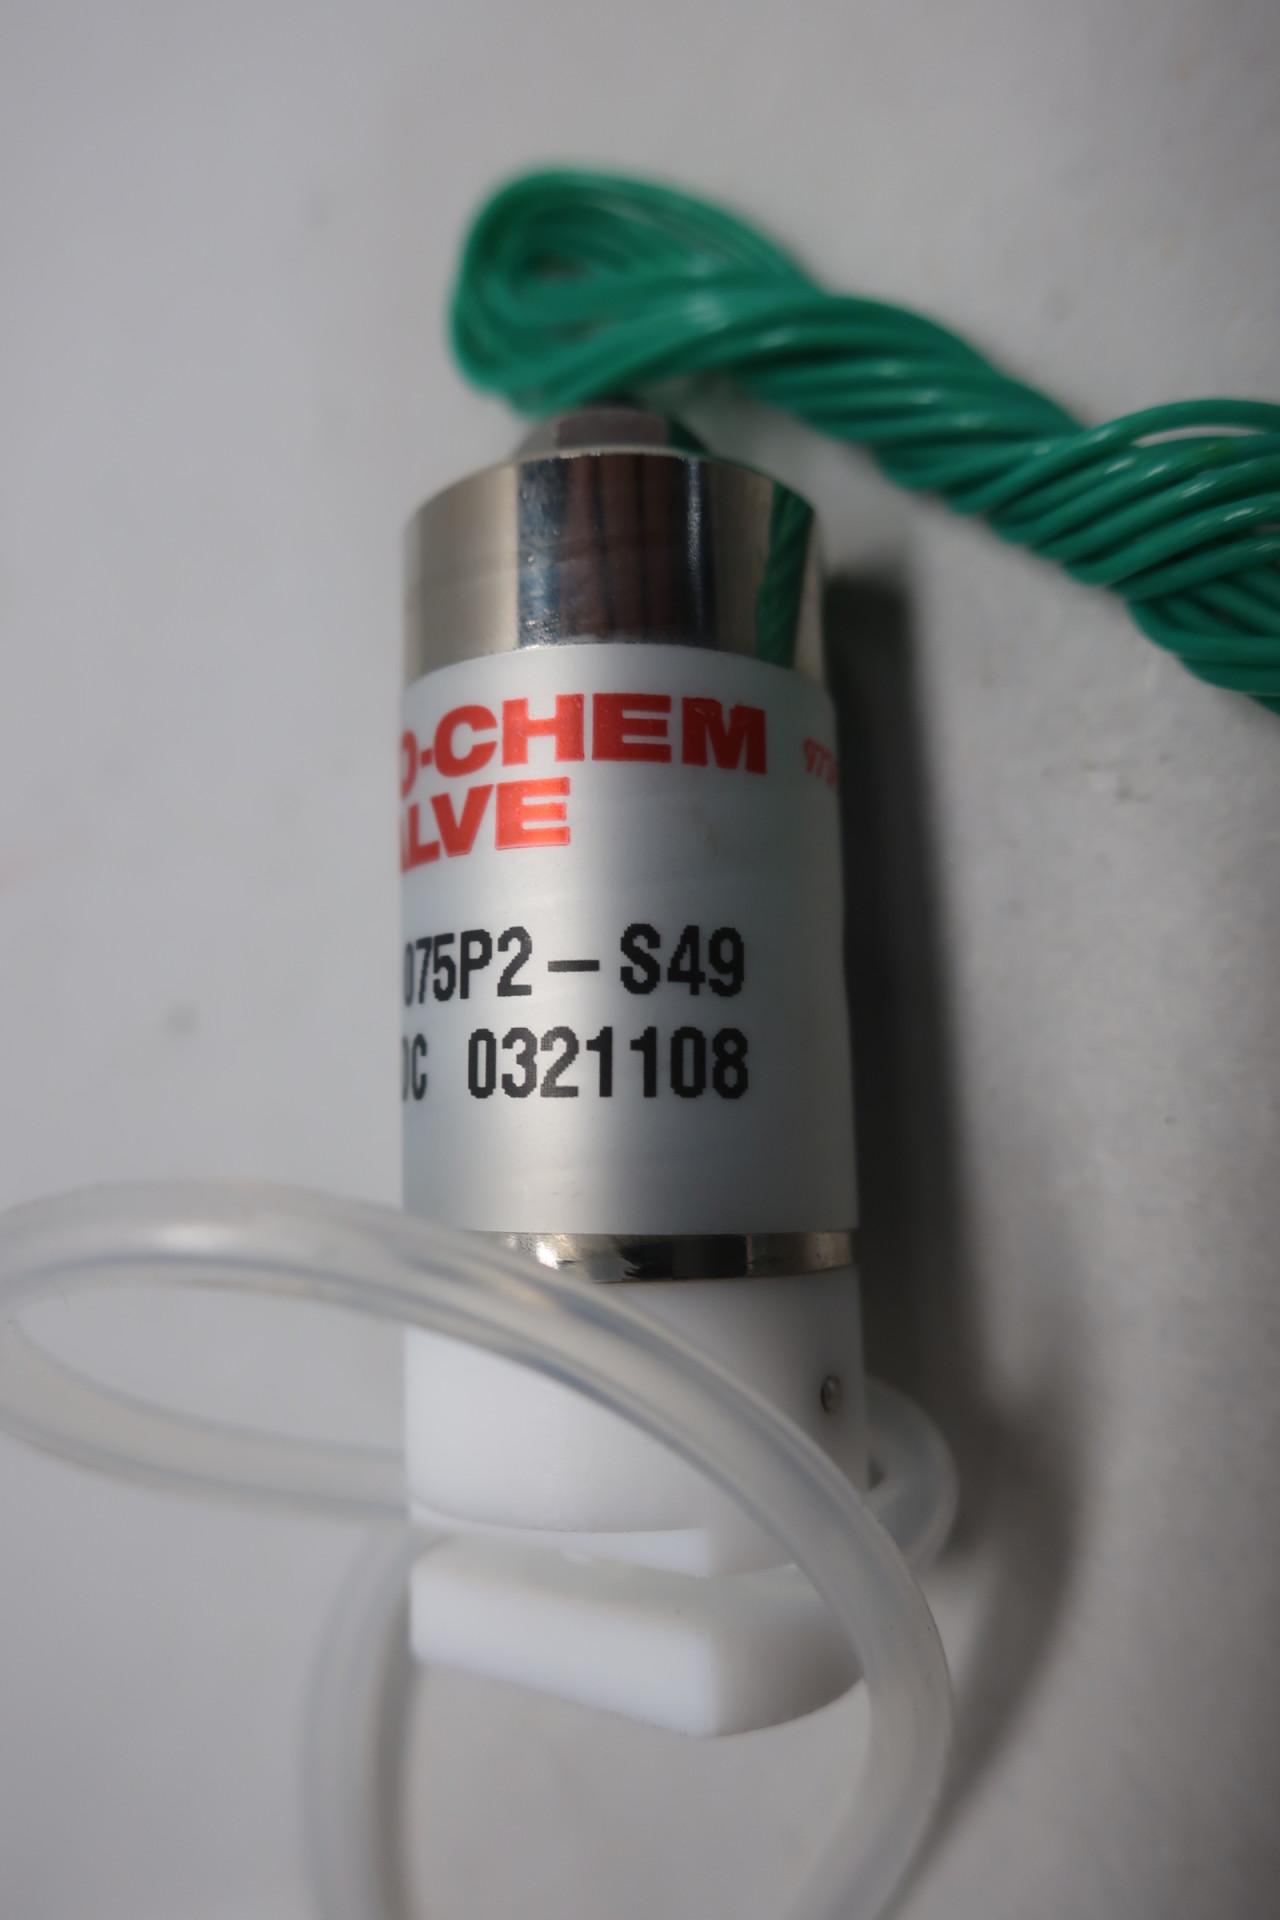 Details about   Bio-Chem Valve Inc 075T2-S91 2-way valve 24VDC 